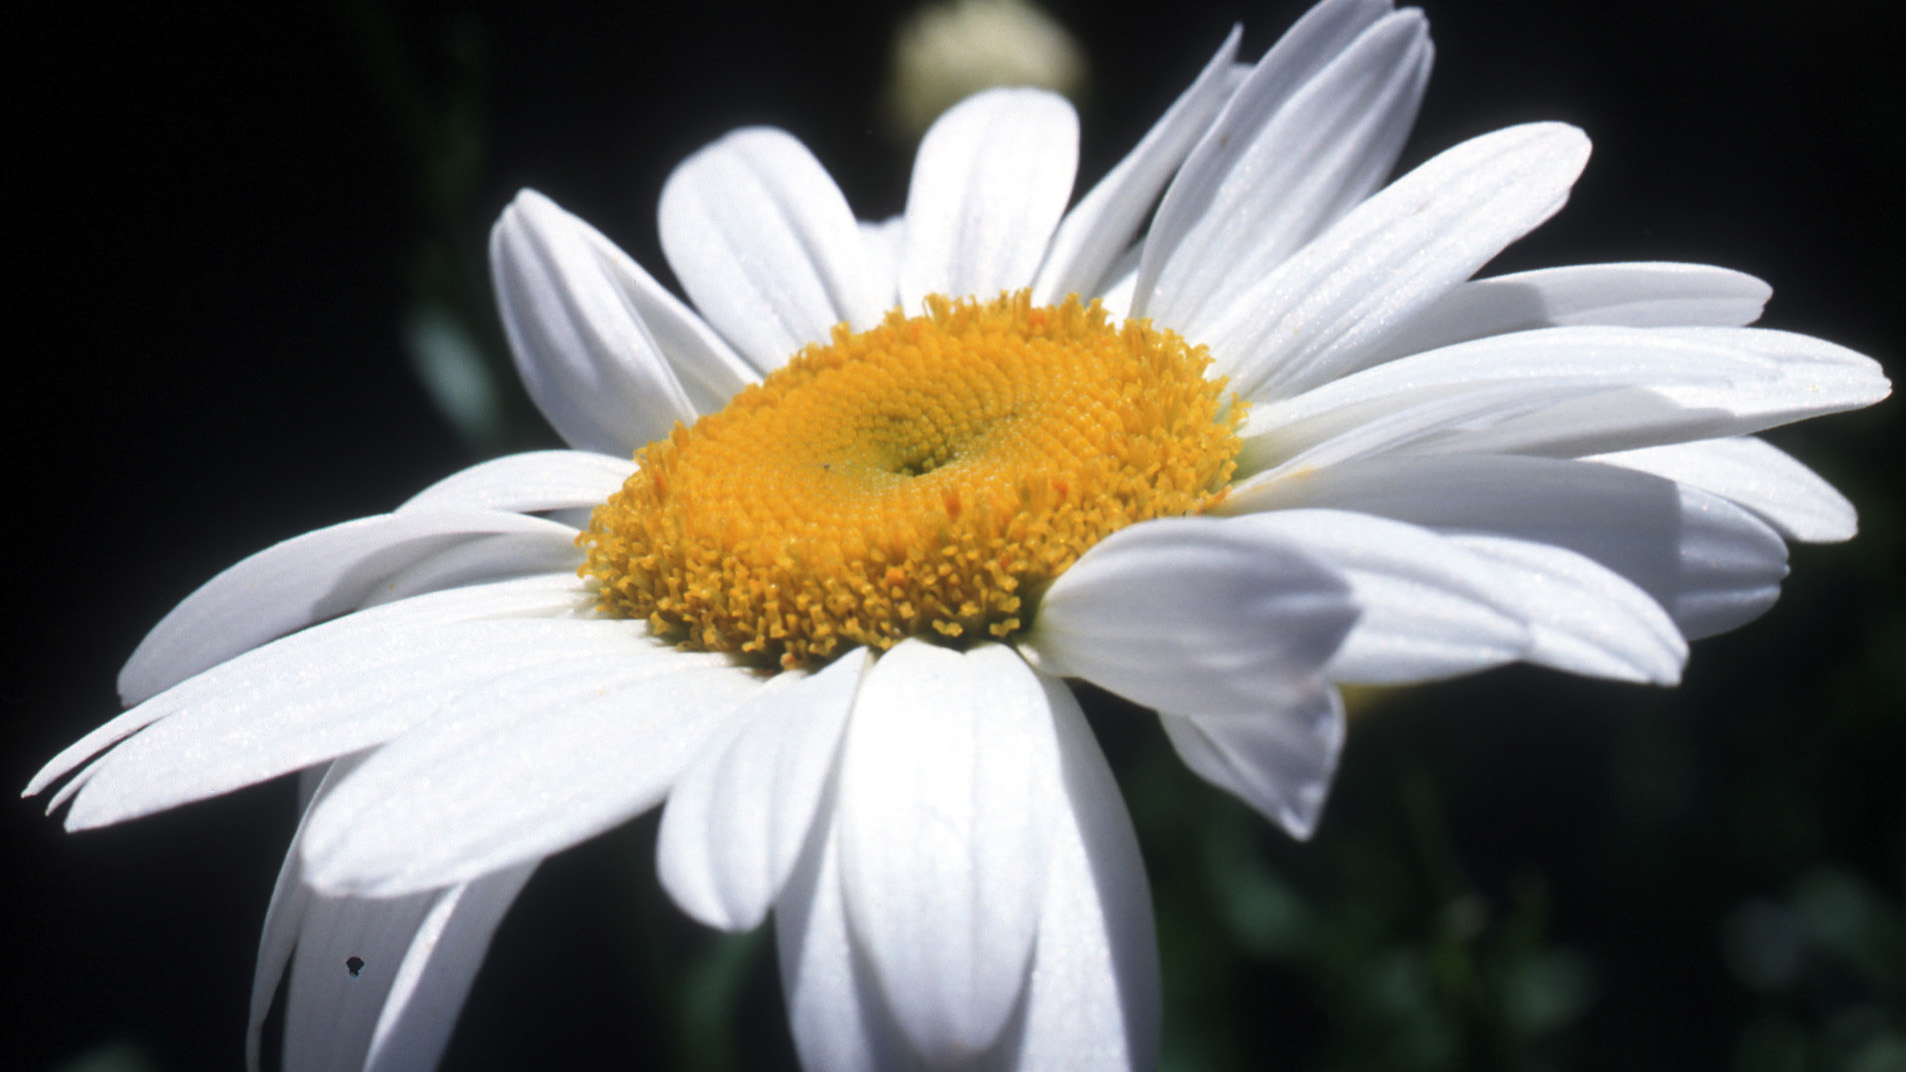 Close up photo of a daisy